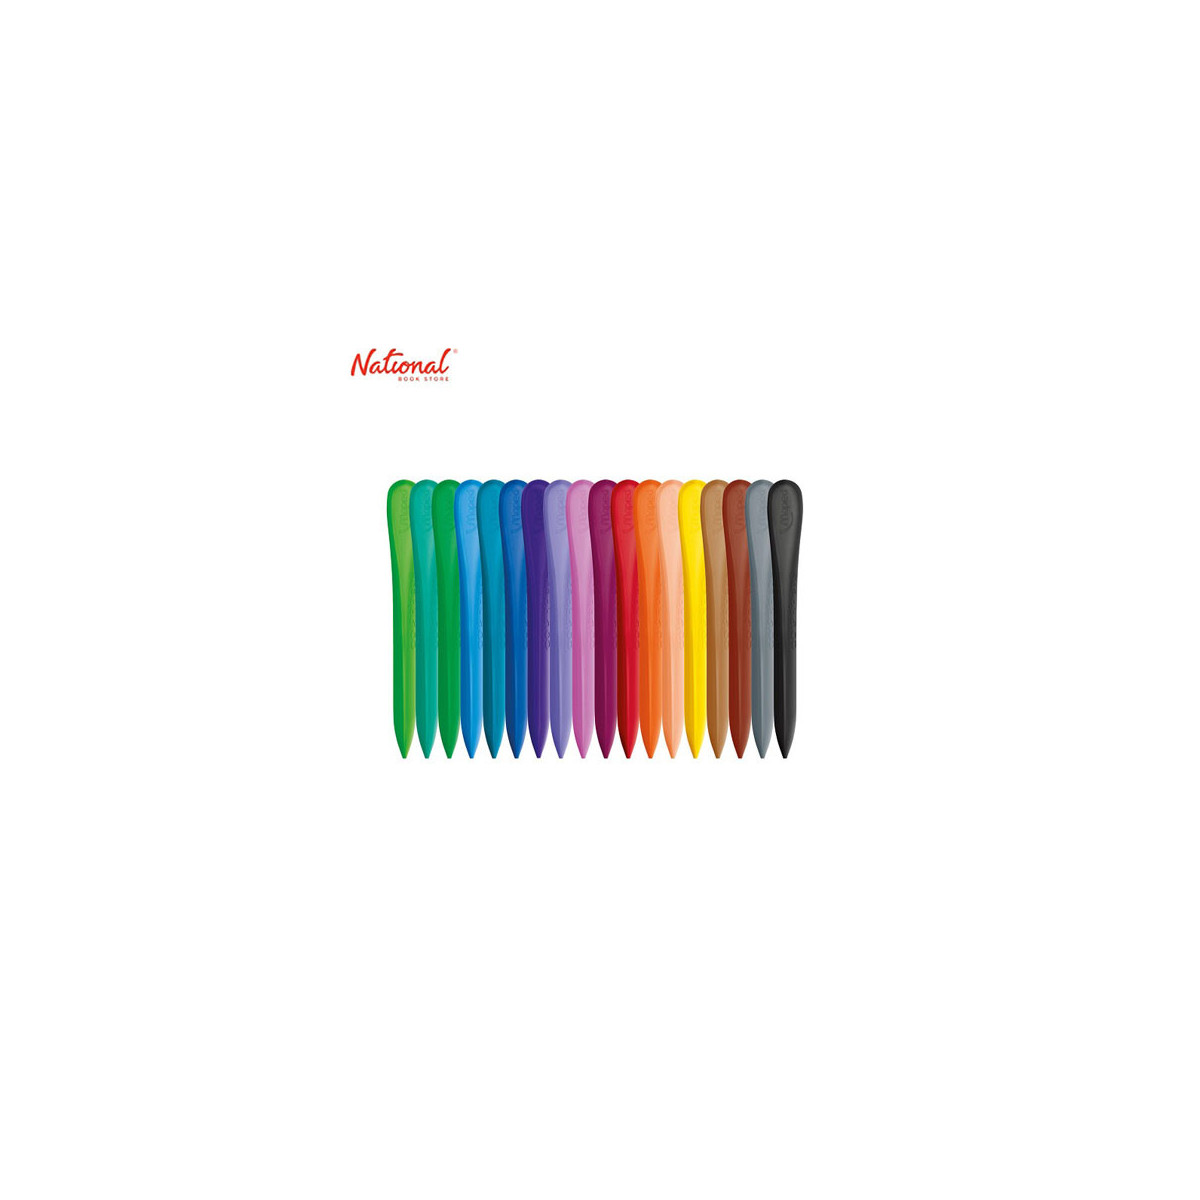 Etui de 18 crayons de couleur Color'peps – Virgin Megastore